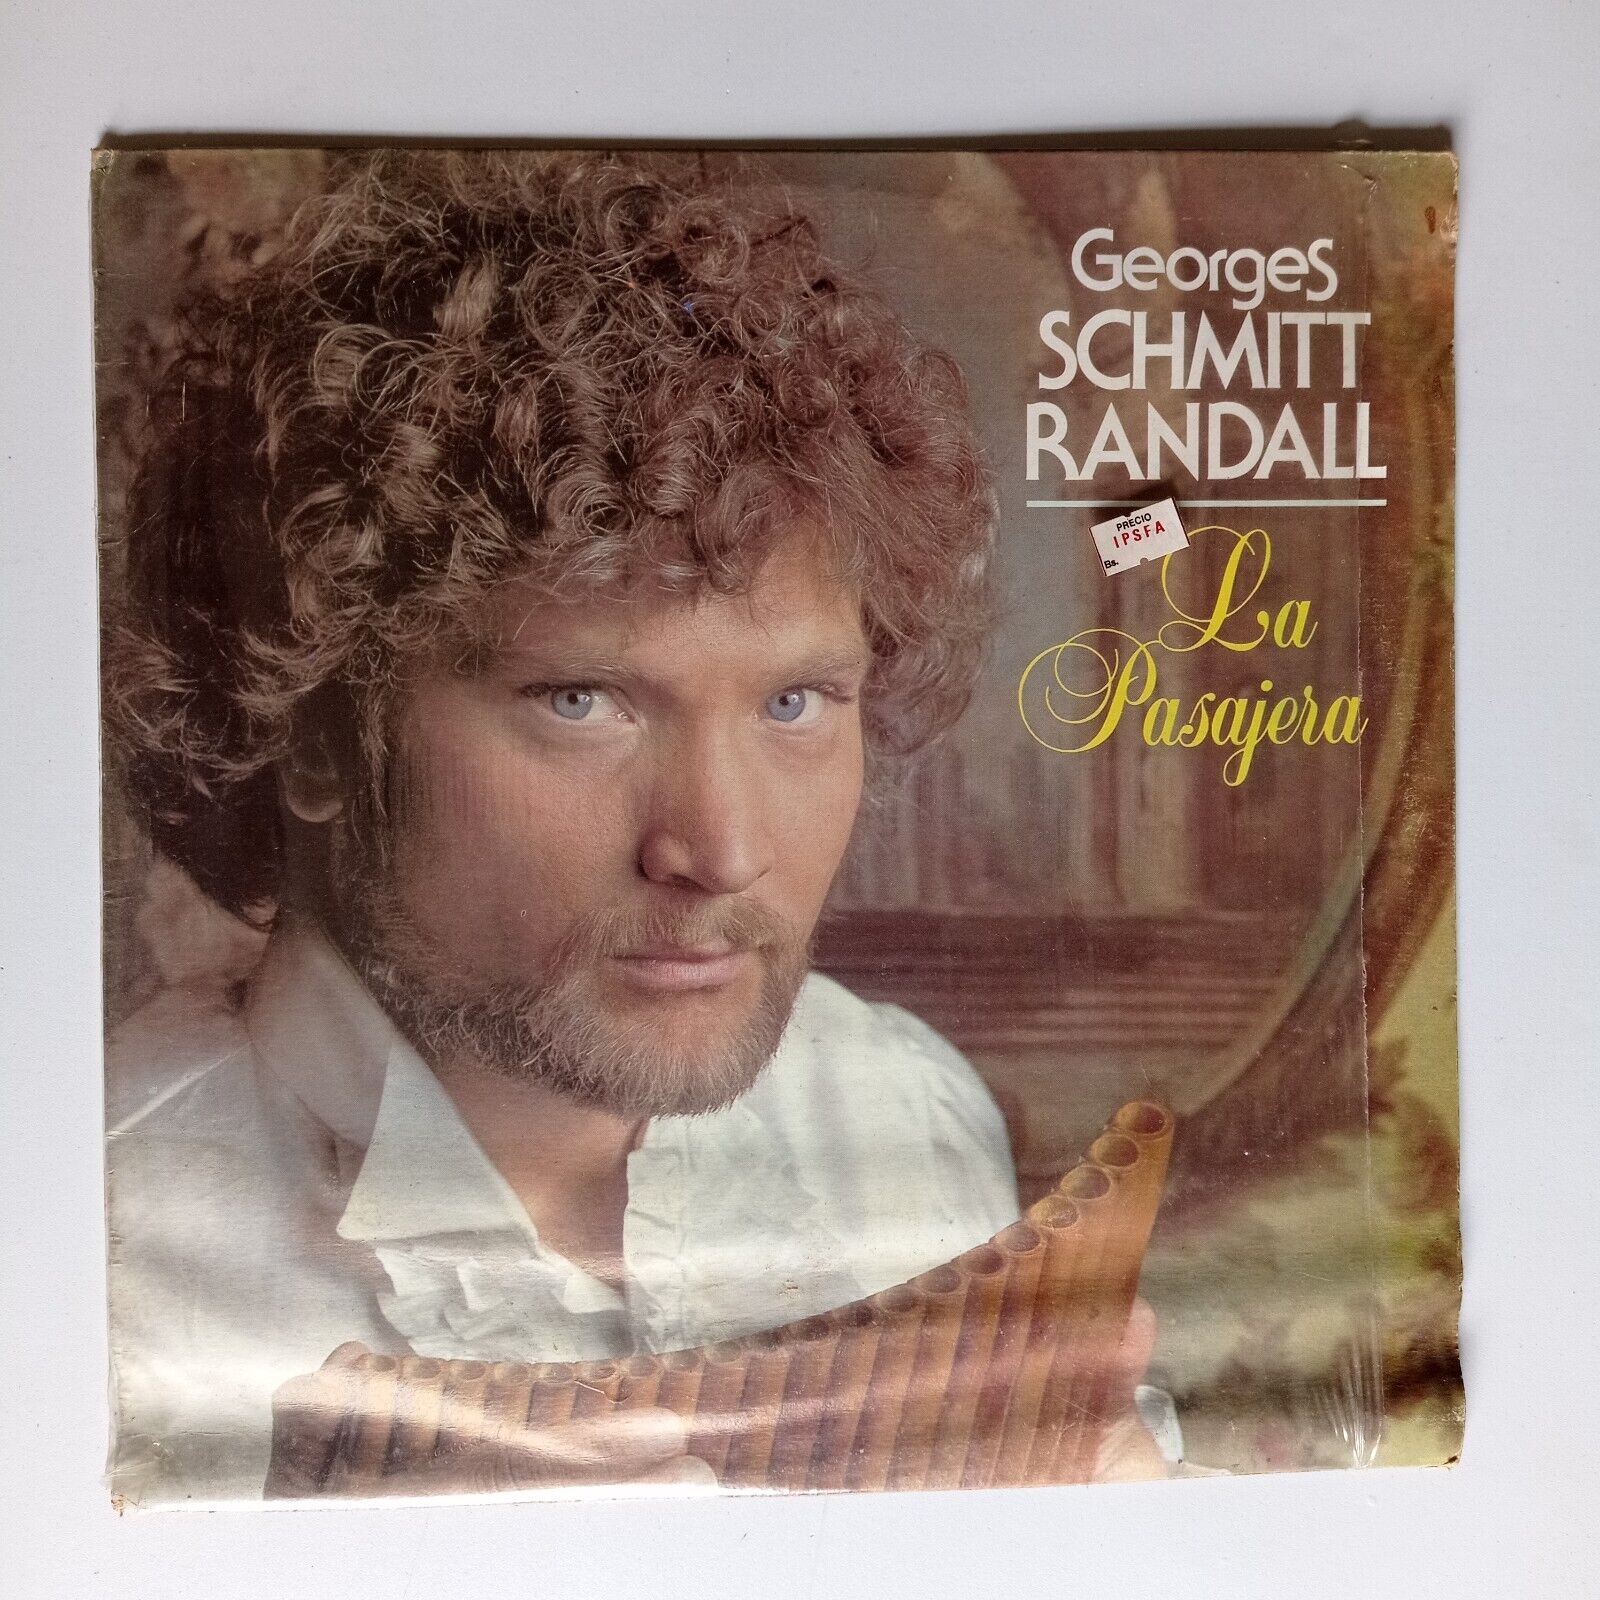 Georges Schmitt Randall – La Passagère [1982] Vinyl LP Pop Classical Delphine